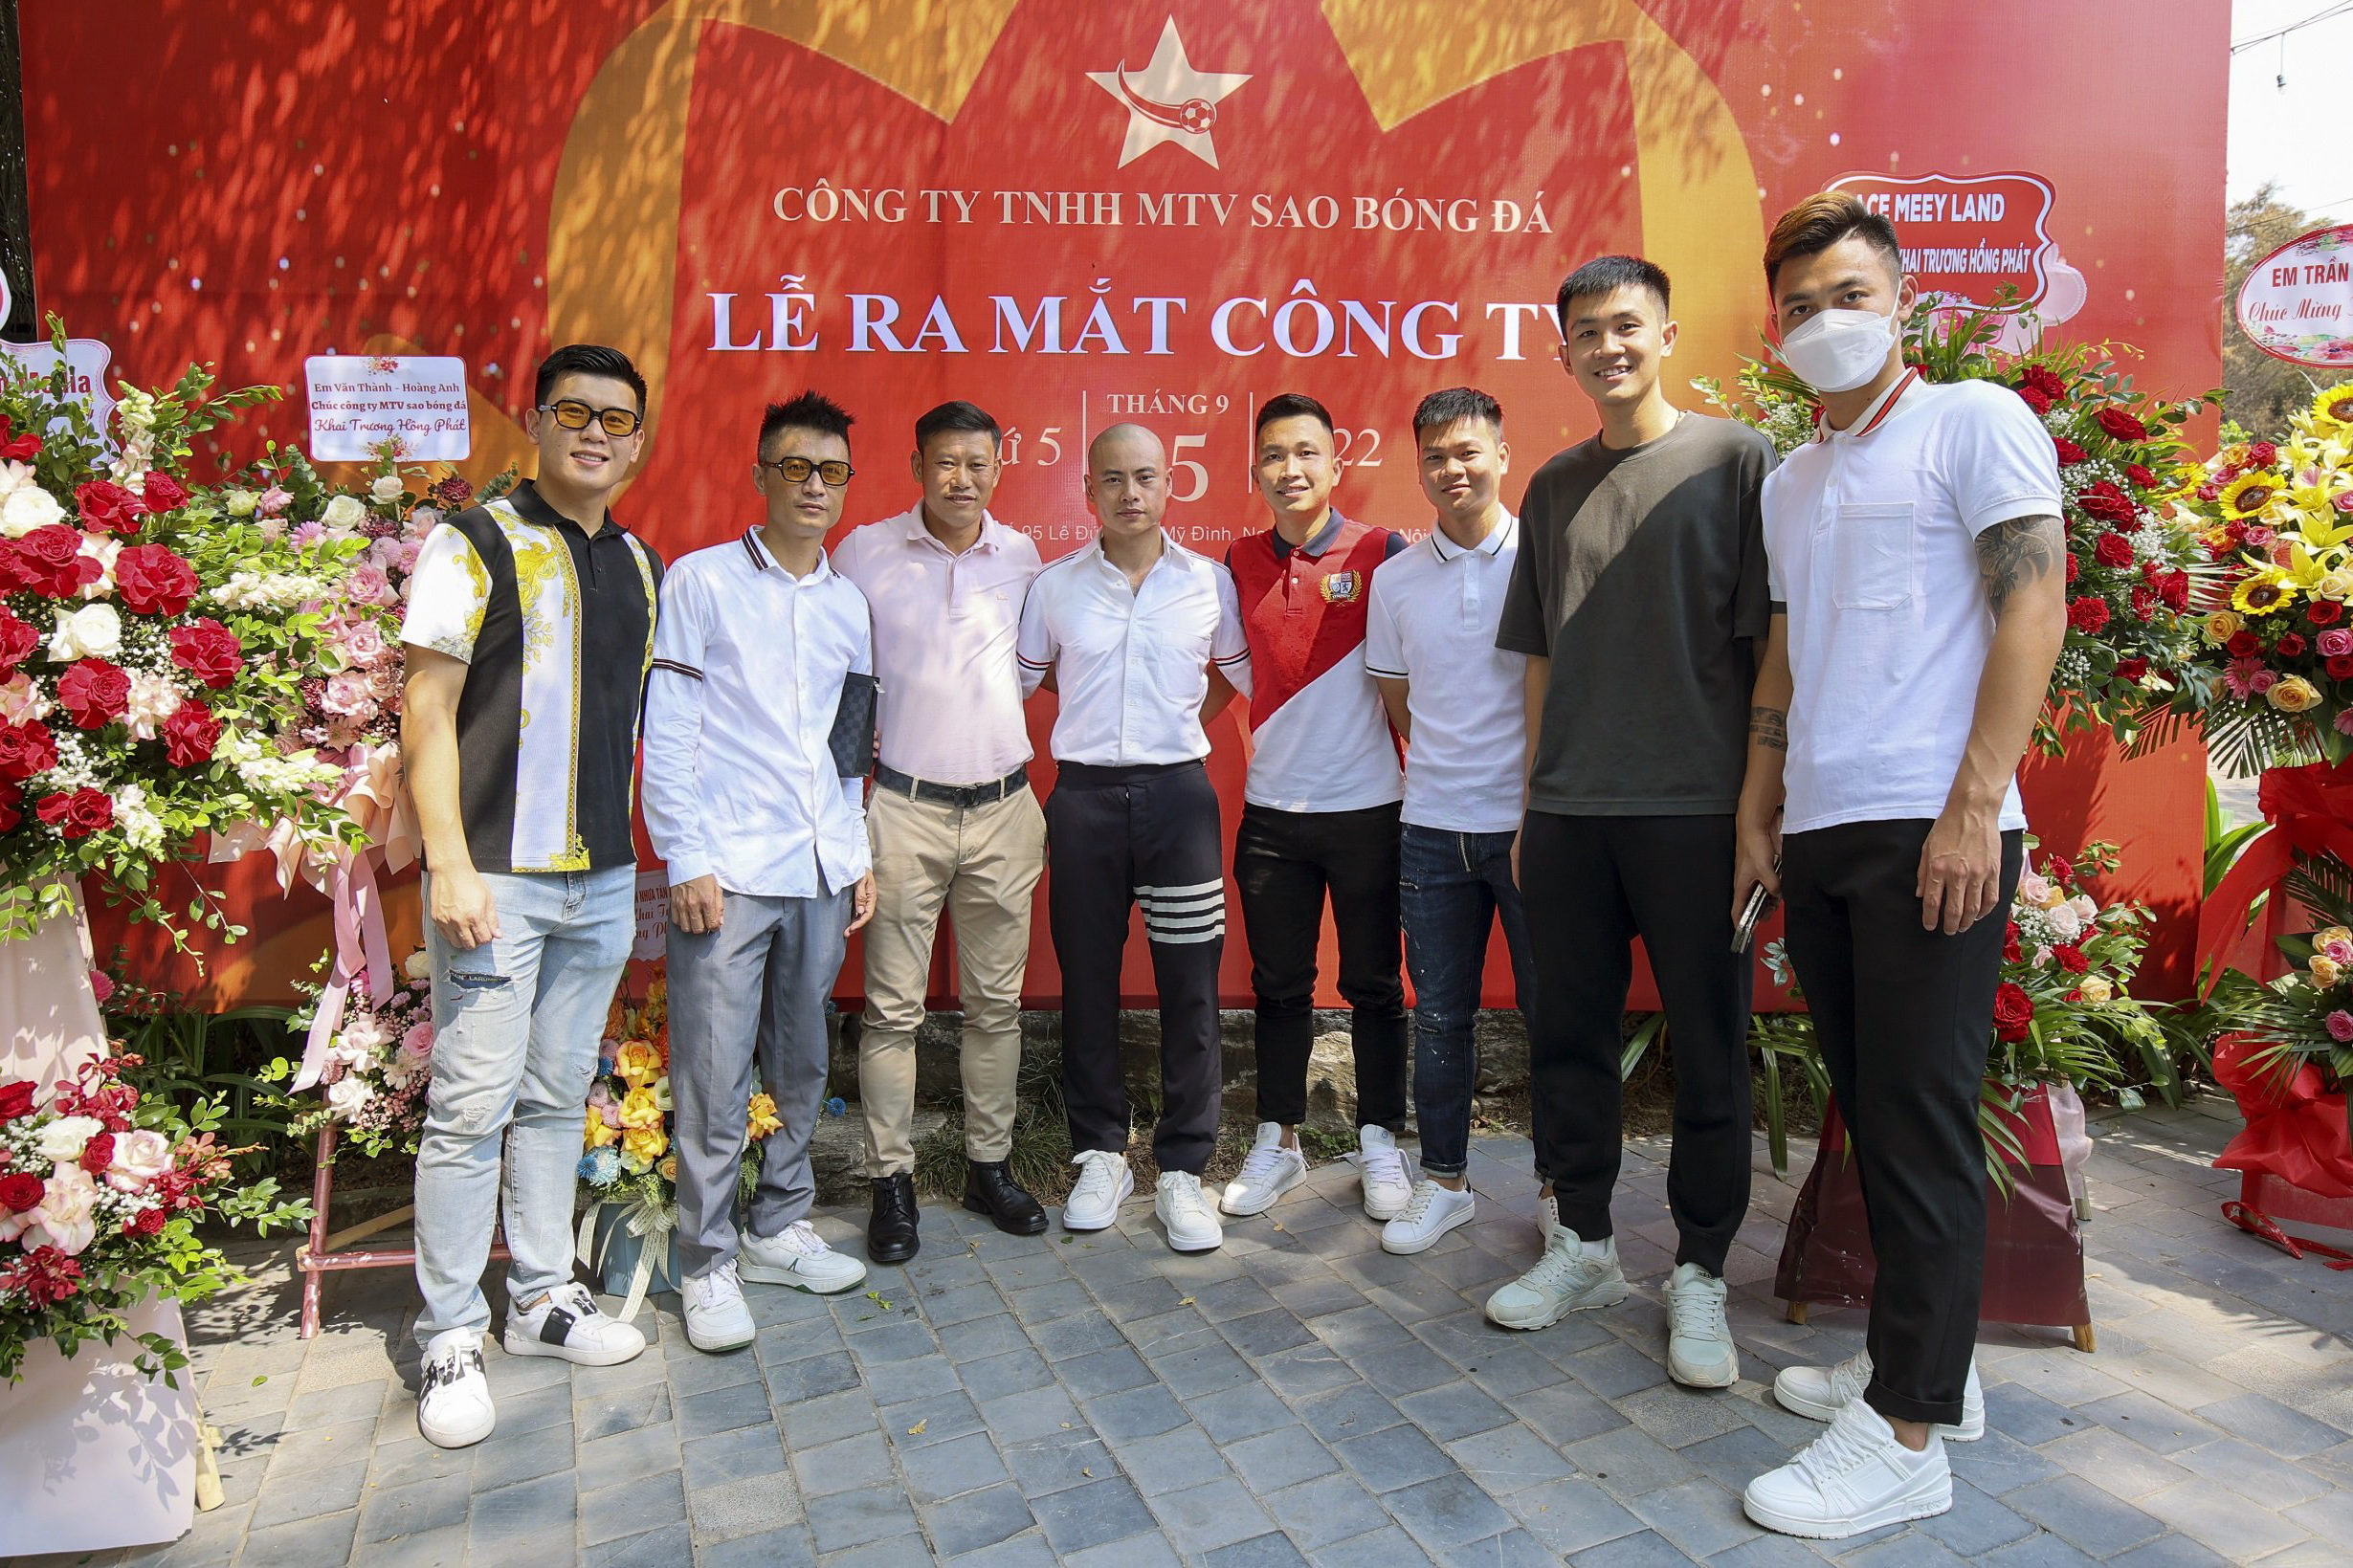 Cựu tuyển thủ Thạch Bảo Khanh và các cầu thủ bóng đá đến chúc mừng Lễ ra mắt công ty.